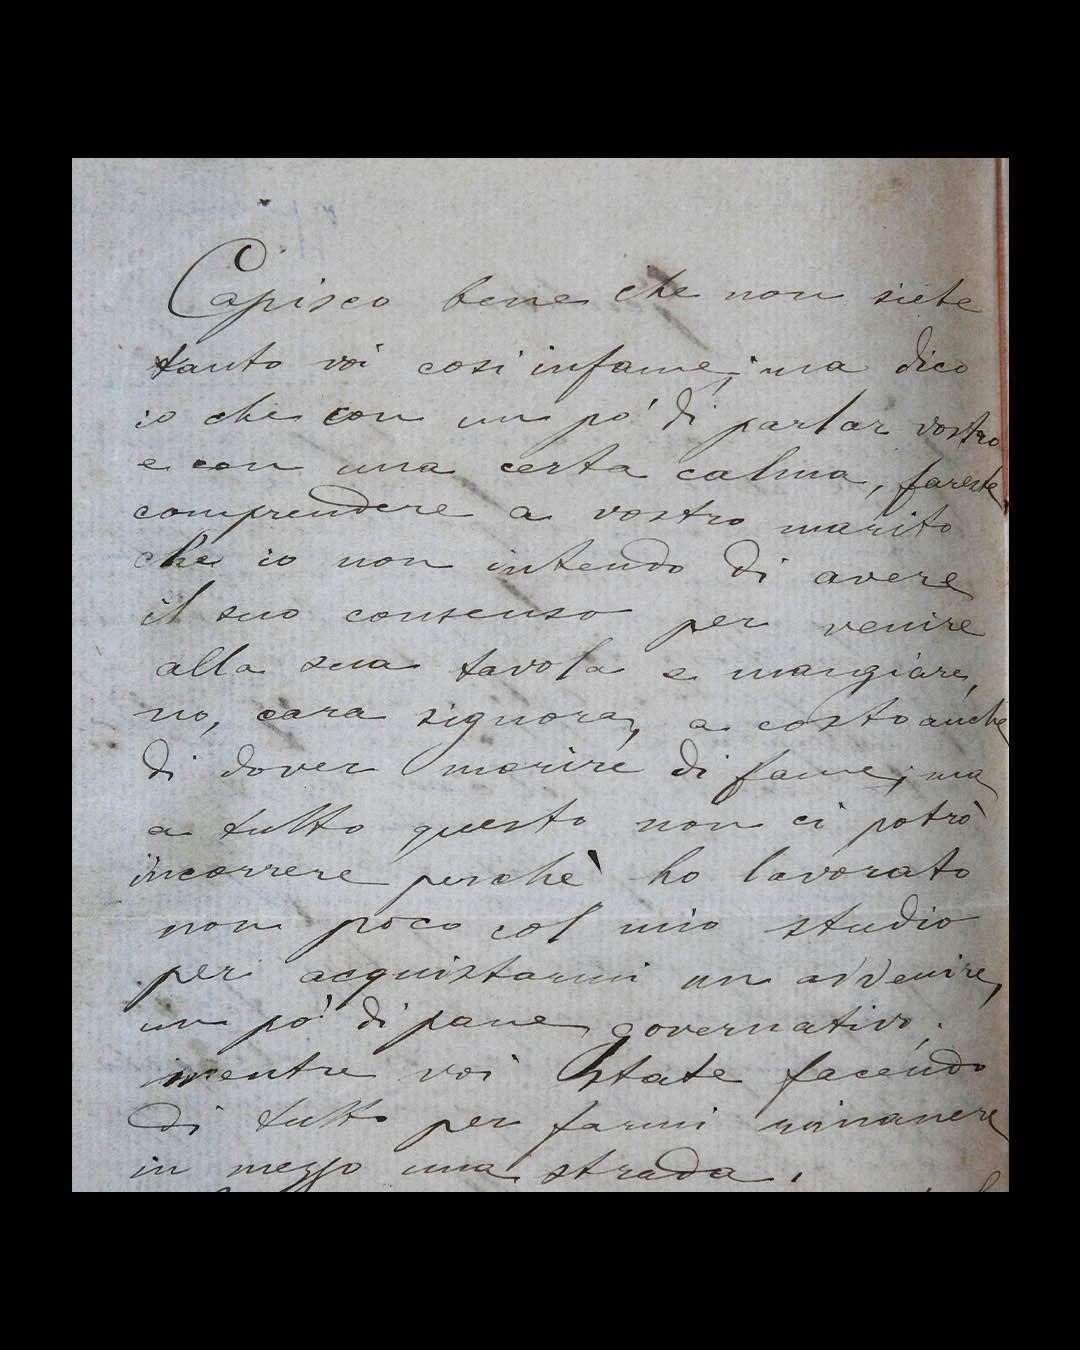 Dalla lettera di Concetta M. a Caterina R., madre di Adolfo, s.d. 